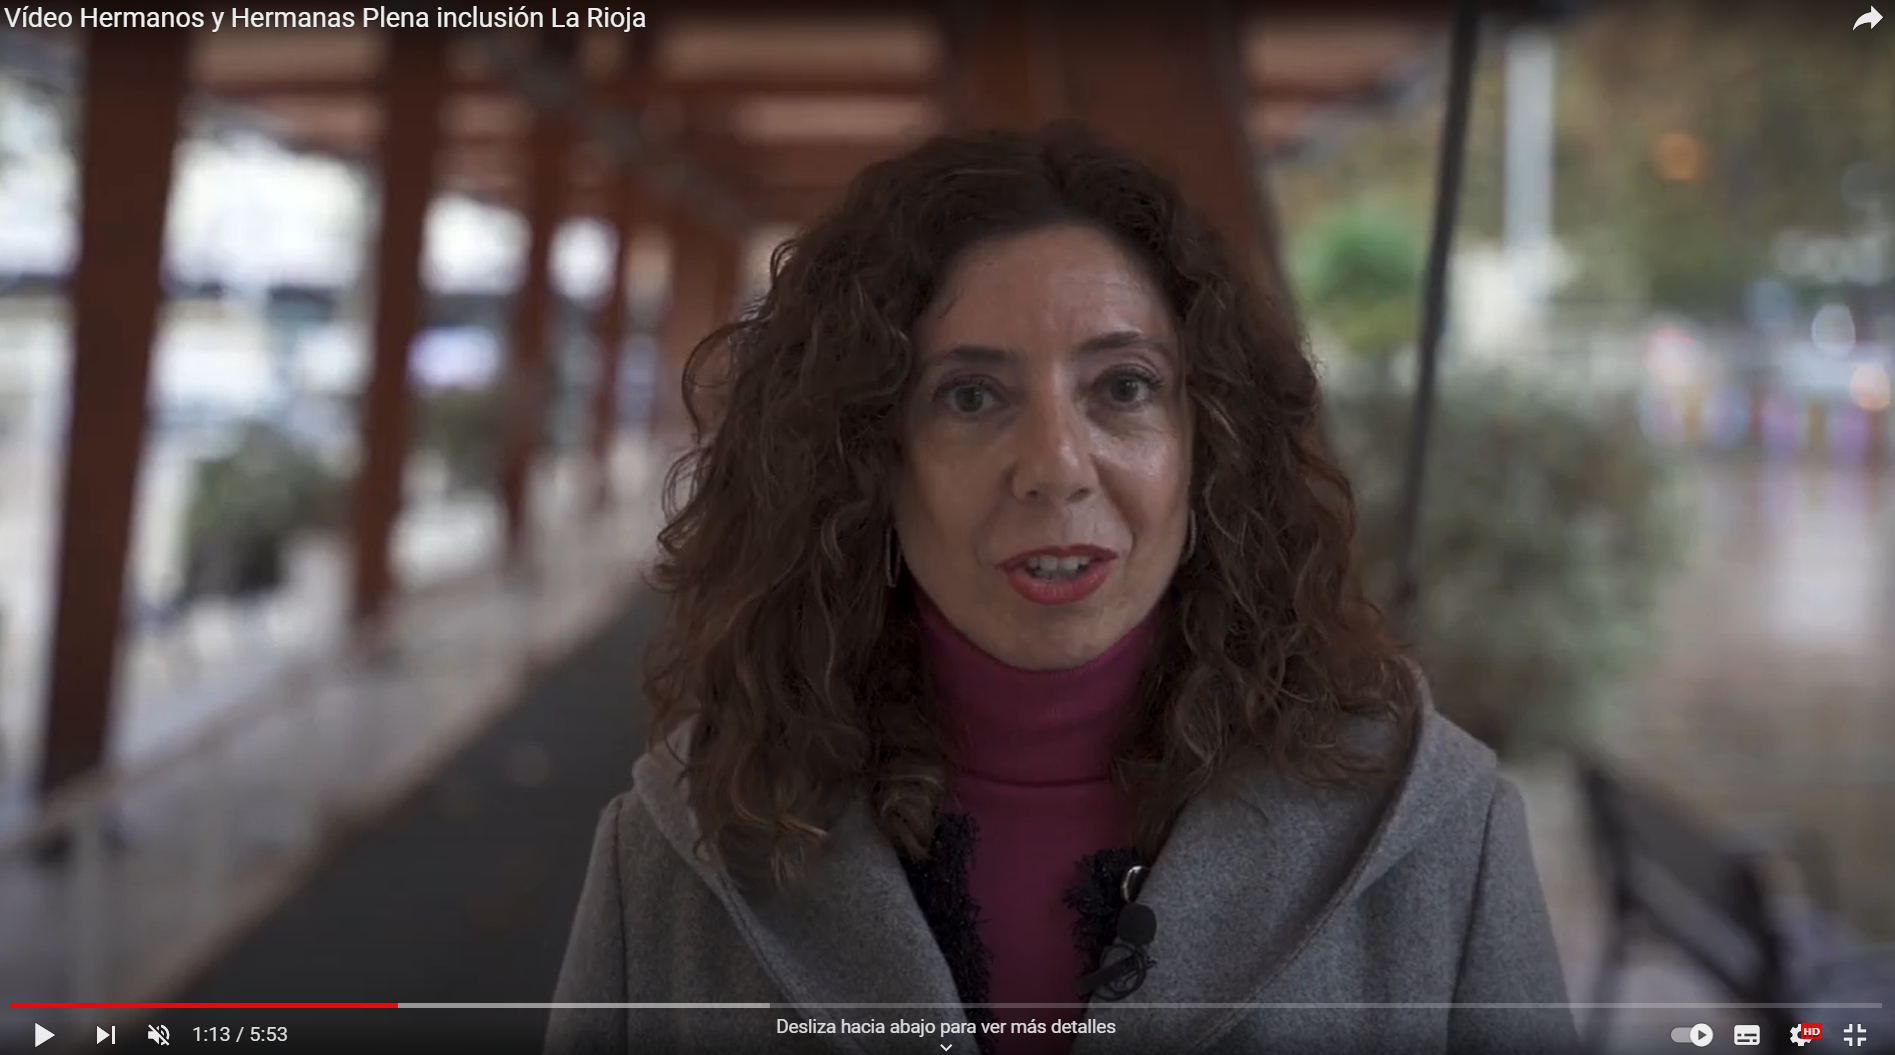 Vídeo dedicado a los hermanos y hermanas Plena inclusión La Rioja